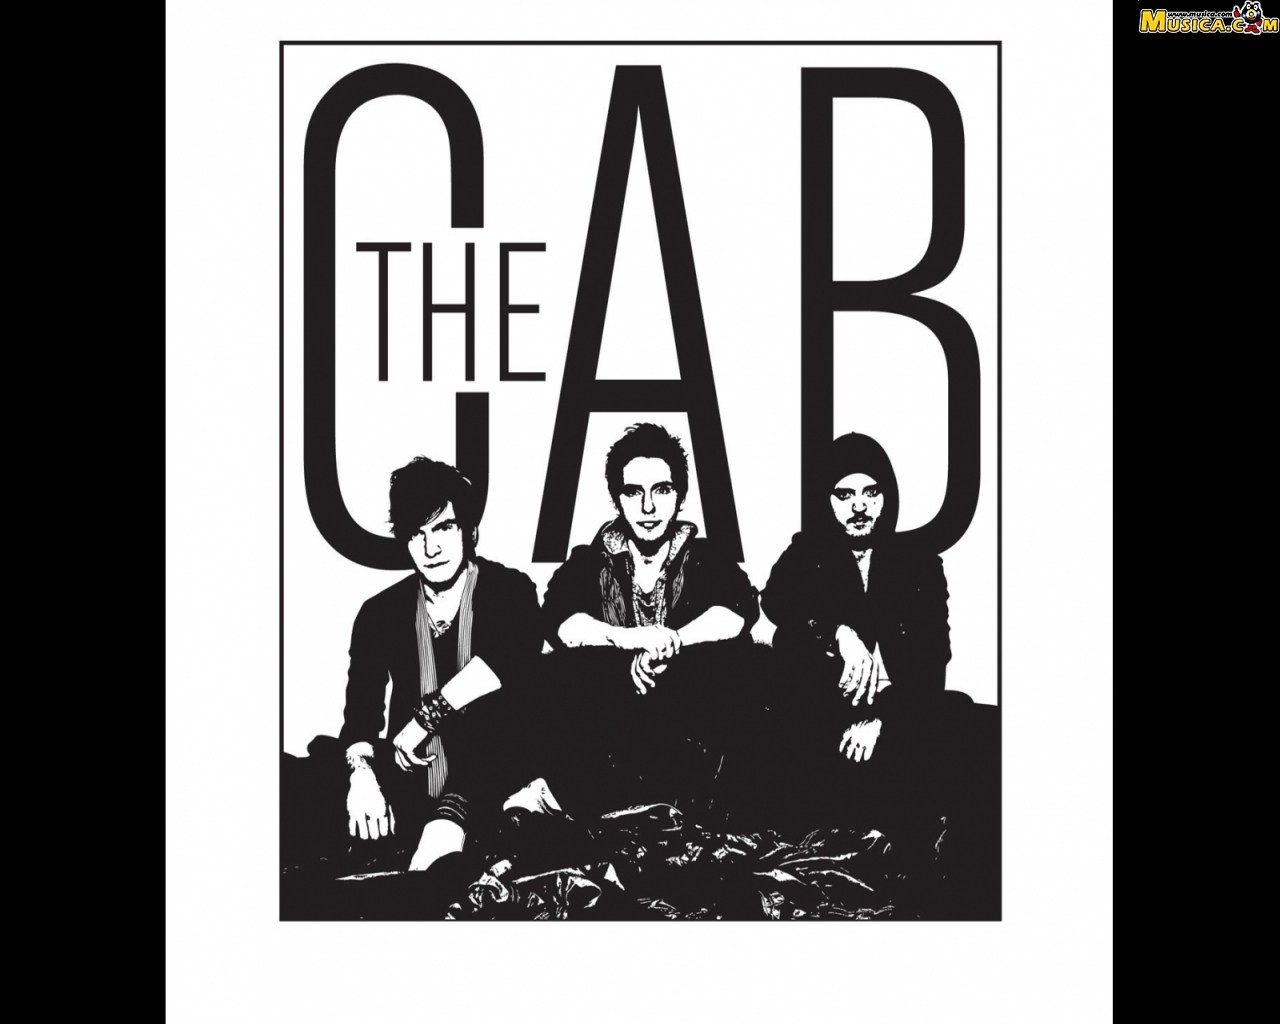 Fondo de pantalla de The Cab